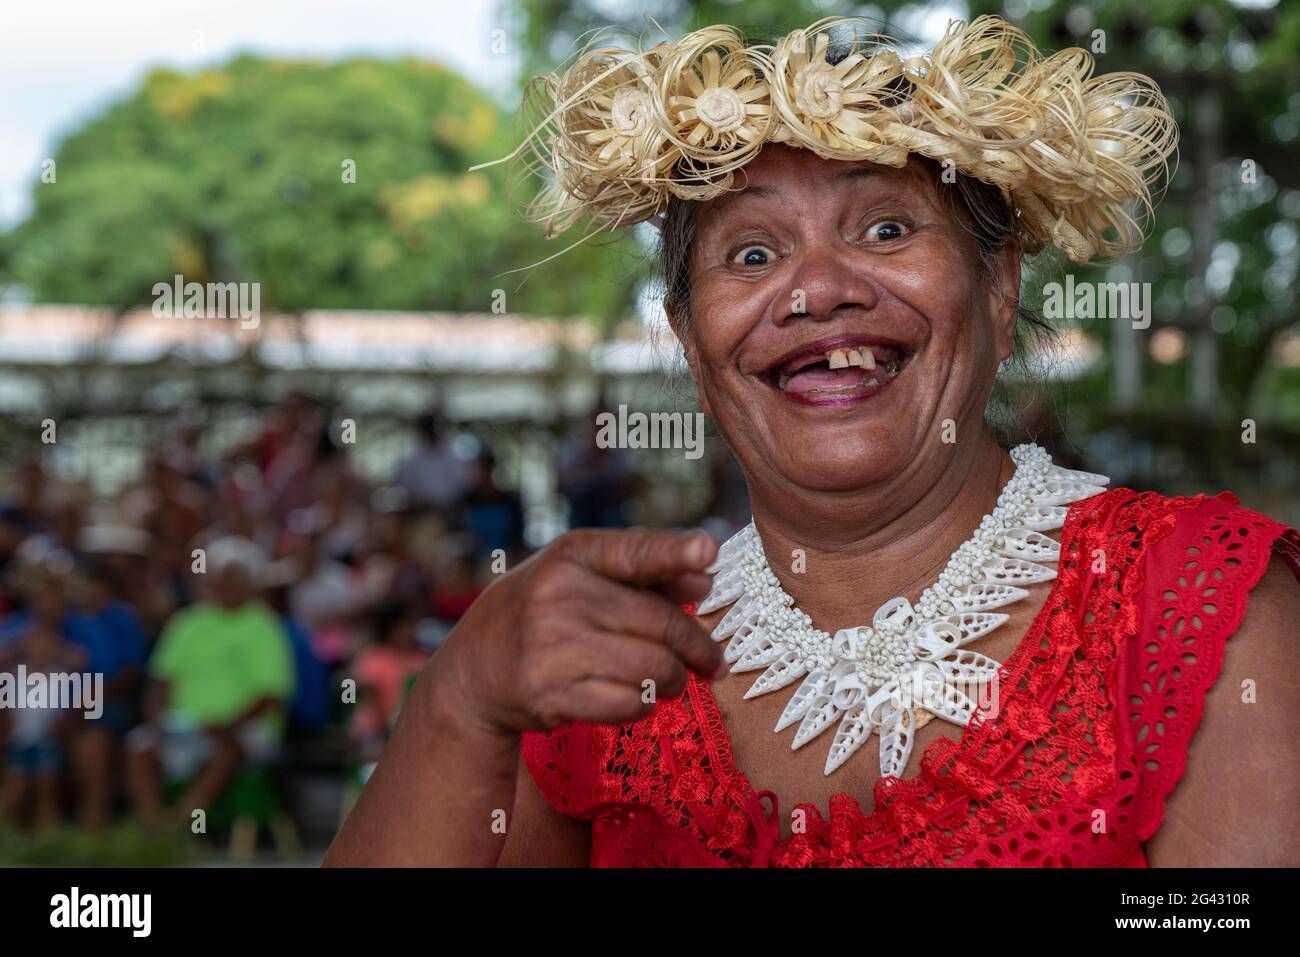 Allegra donna tahitiana sorride con denti mancanti in un festival culturale, Papeete, Tahiti, Windward Islands, Polinesia francese, Sud Pacifico Foto Stock